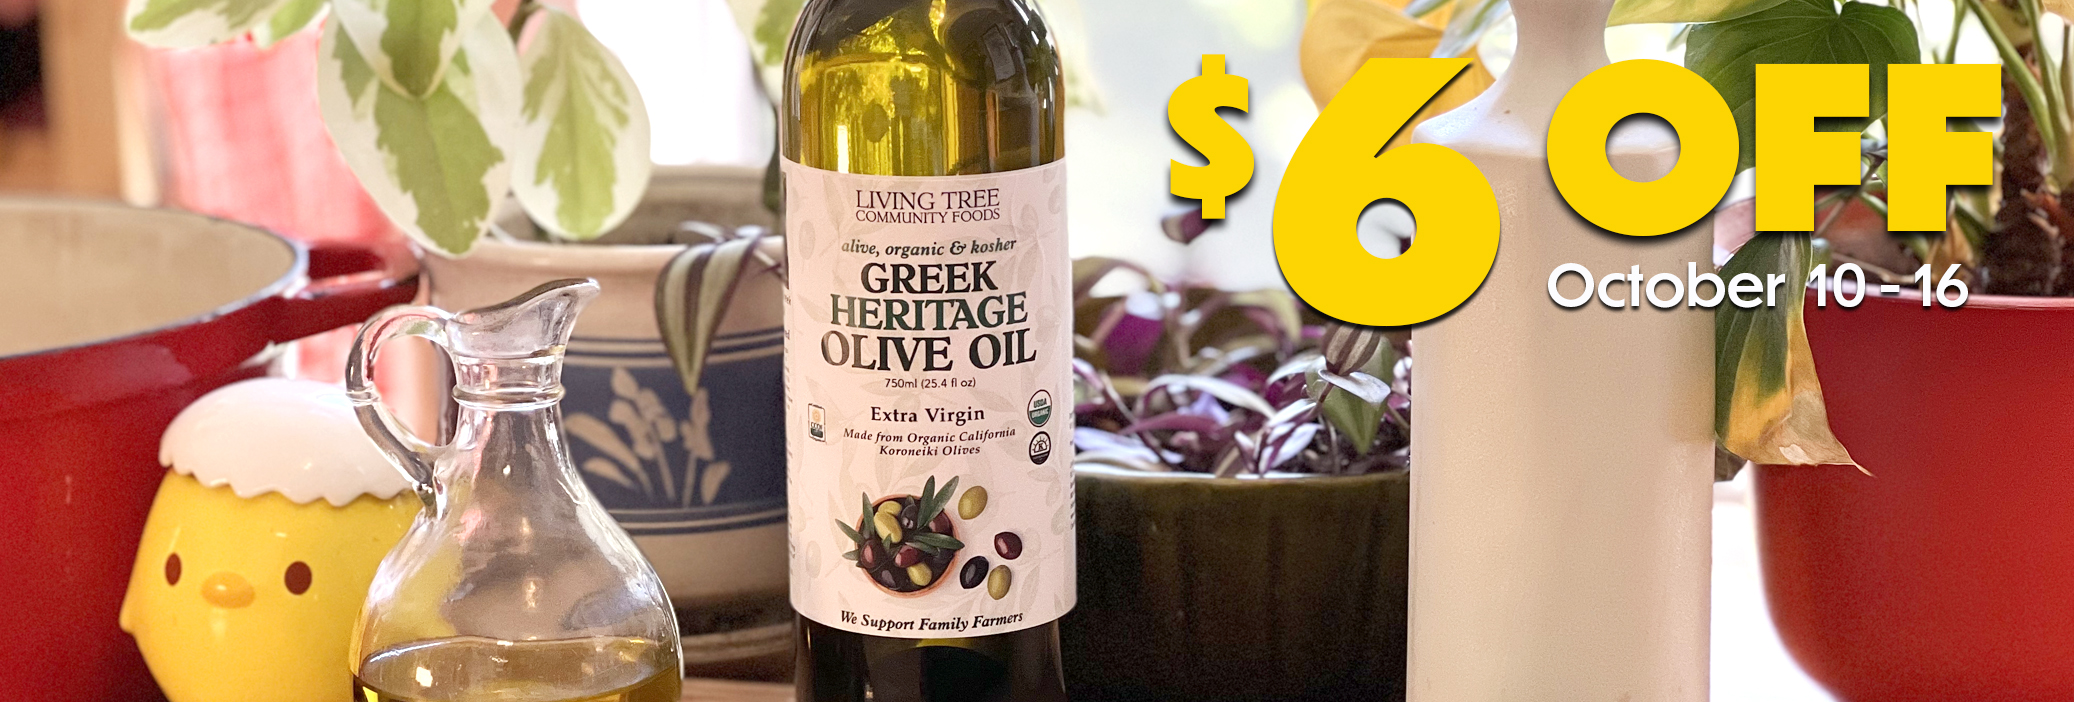 Greek Heritage Olive Oil 750ml Weekly Sale Banner